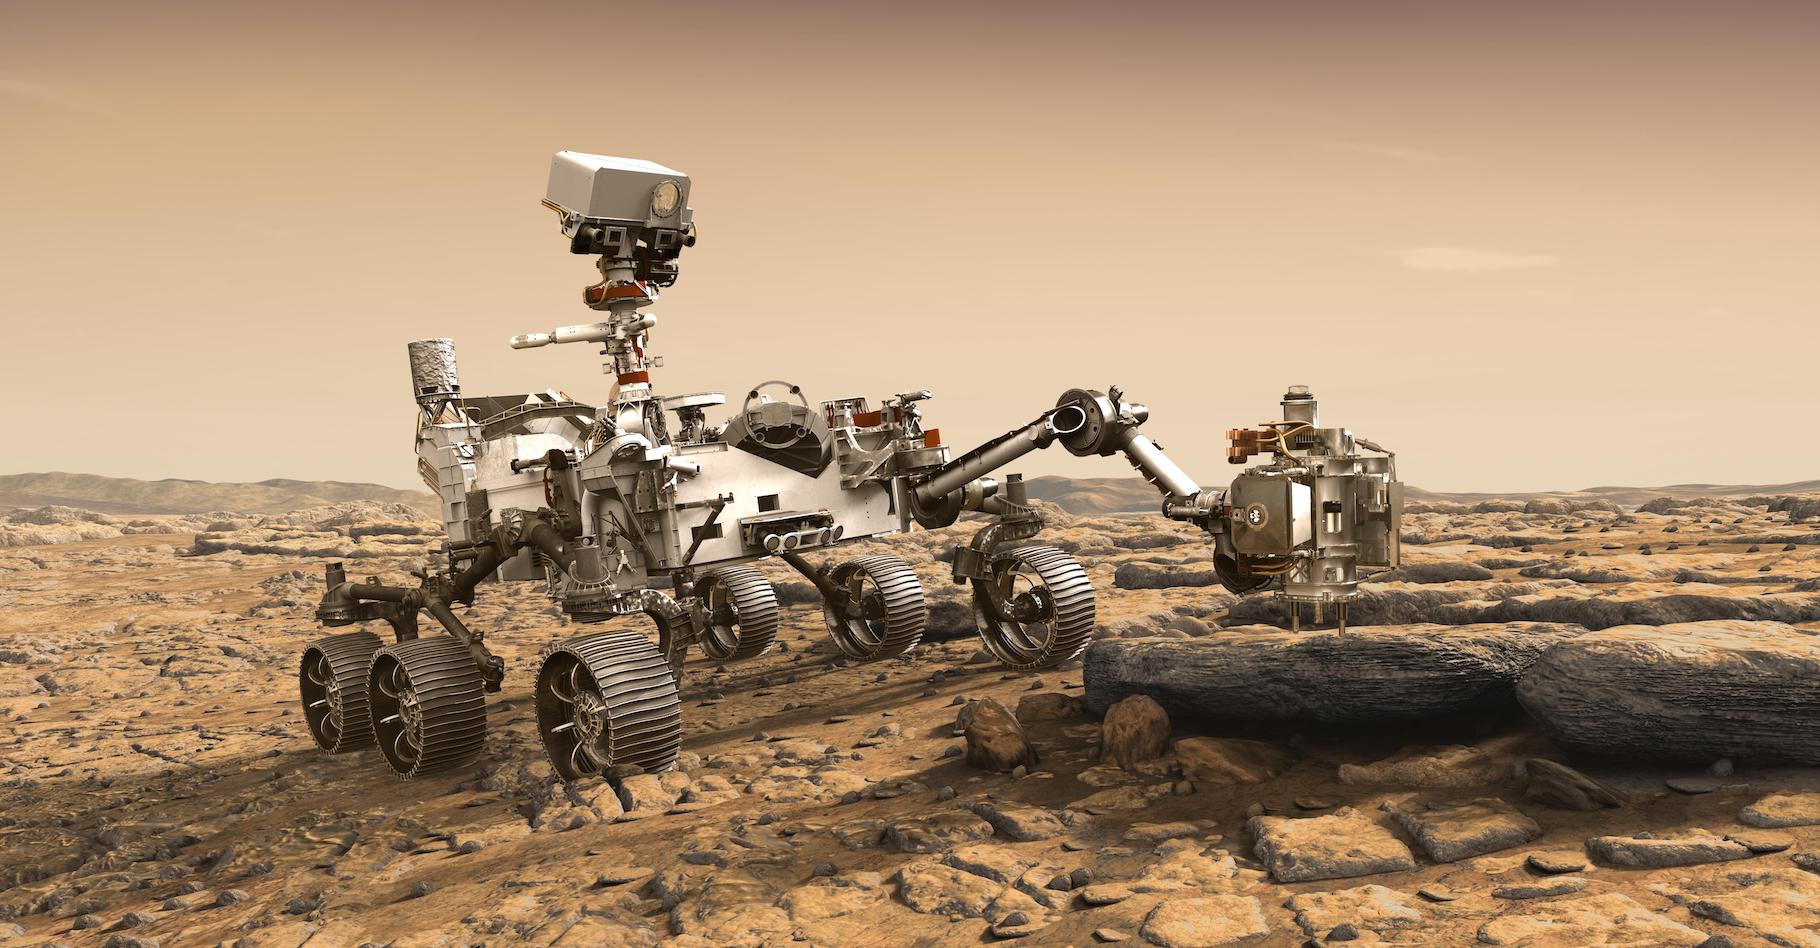 Perseverance est notamment attendu, car il prélèvera des échantillons de sol martien destinés à être ensuite ramenés sur Terre. © JPL-Caltech, Nasa